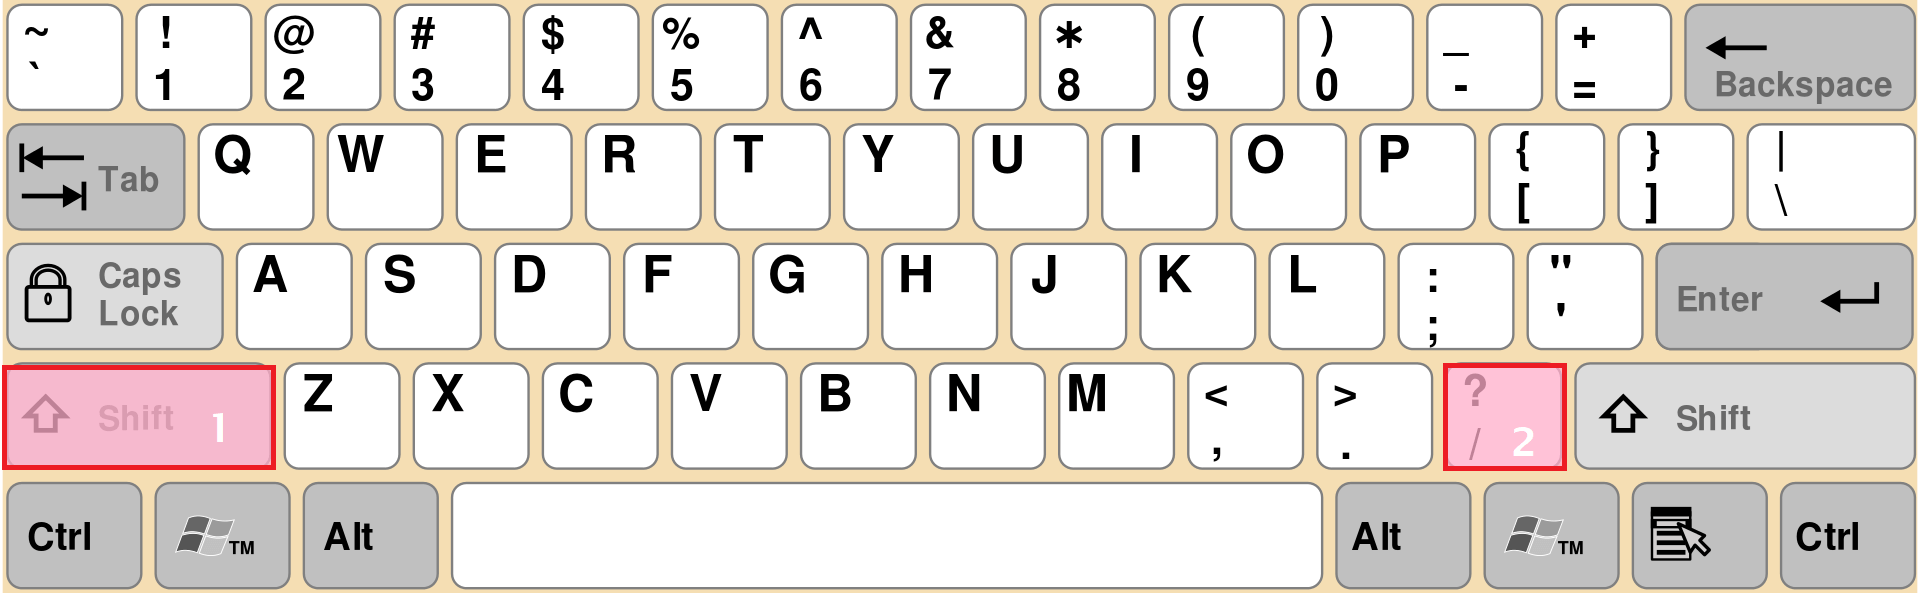 Comment faire un point avec un clavier qwerty